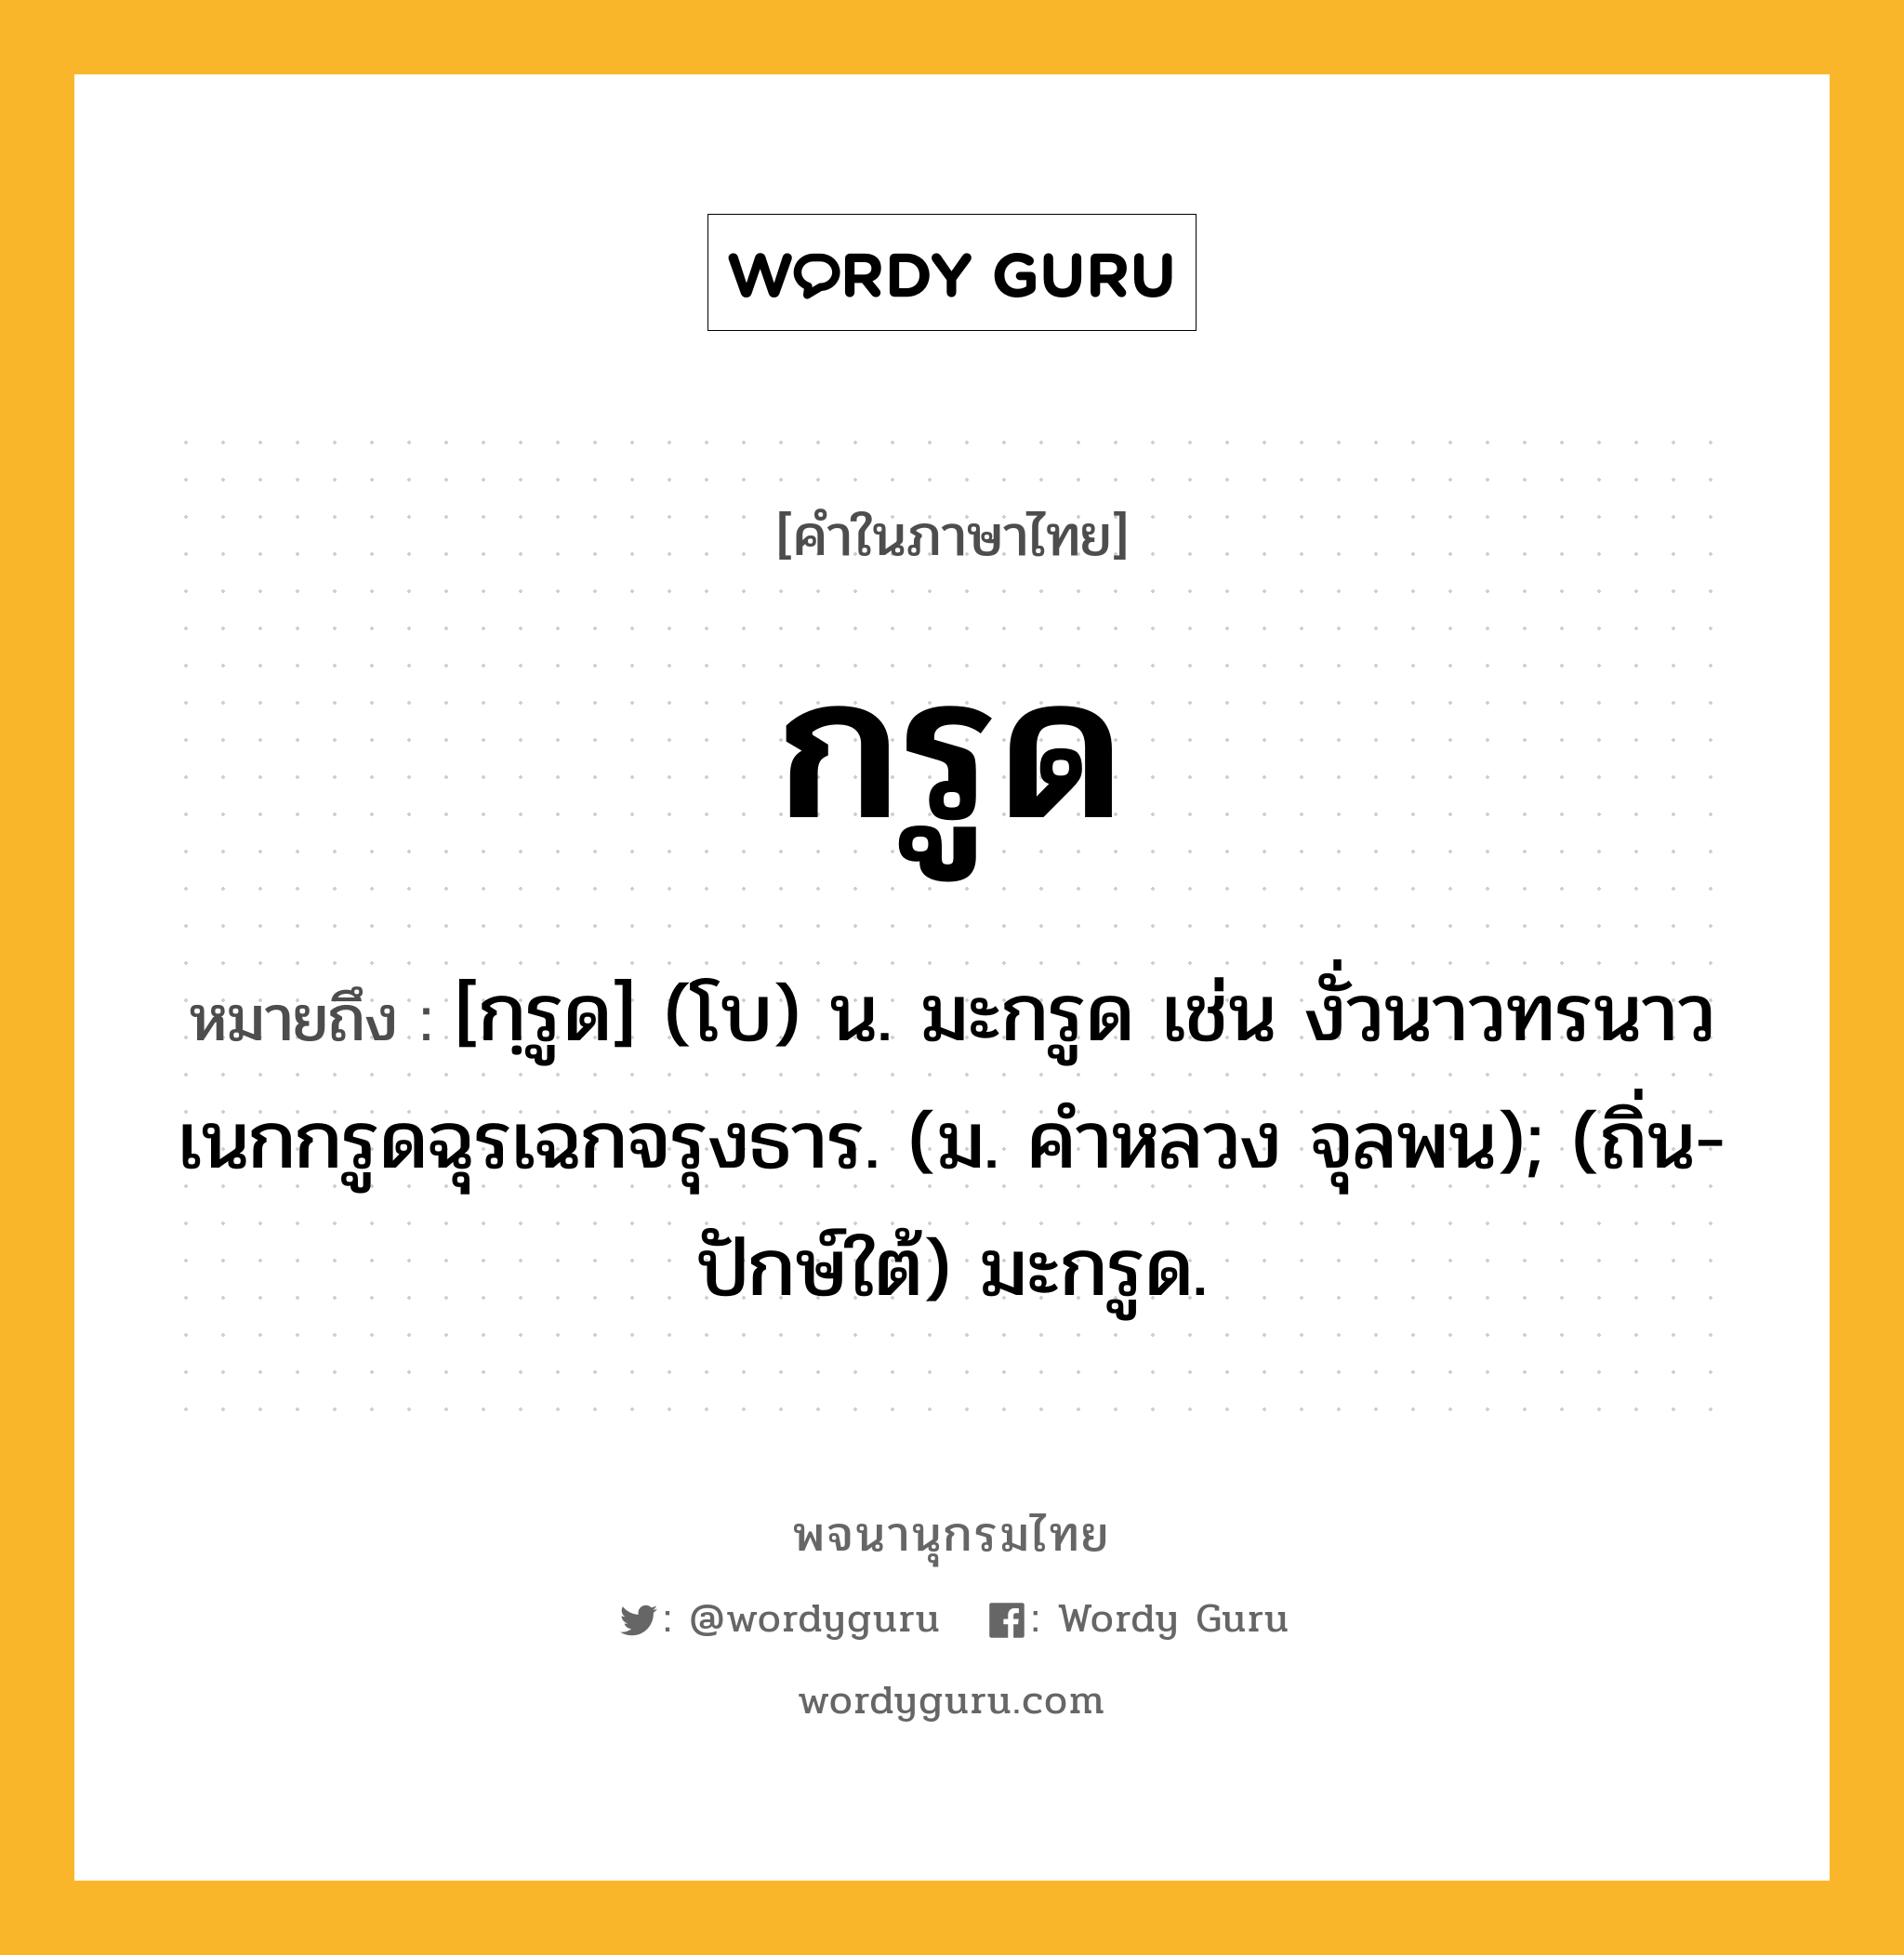 กรูด ความหมาย หมายถึงอะไร?, คำในภาษาไทย กรูด หมายถึง [กฺรูด] (โบ) น. มะกรูด เช่น งั่วนาวทรนาวเนกกรูดฉุรเฉกจรุงธาร. (ม. คําหลวง จุลพน); (ถิ่น-ปักษ์ใต้) มะกรูด.